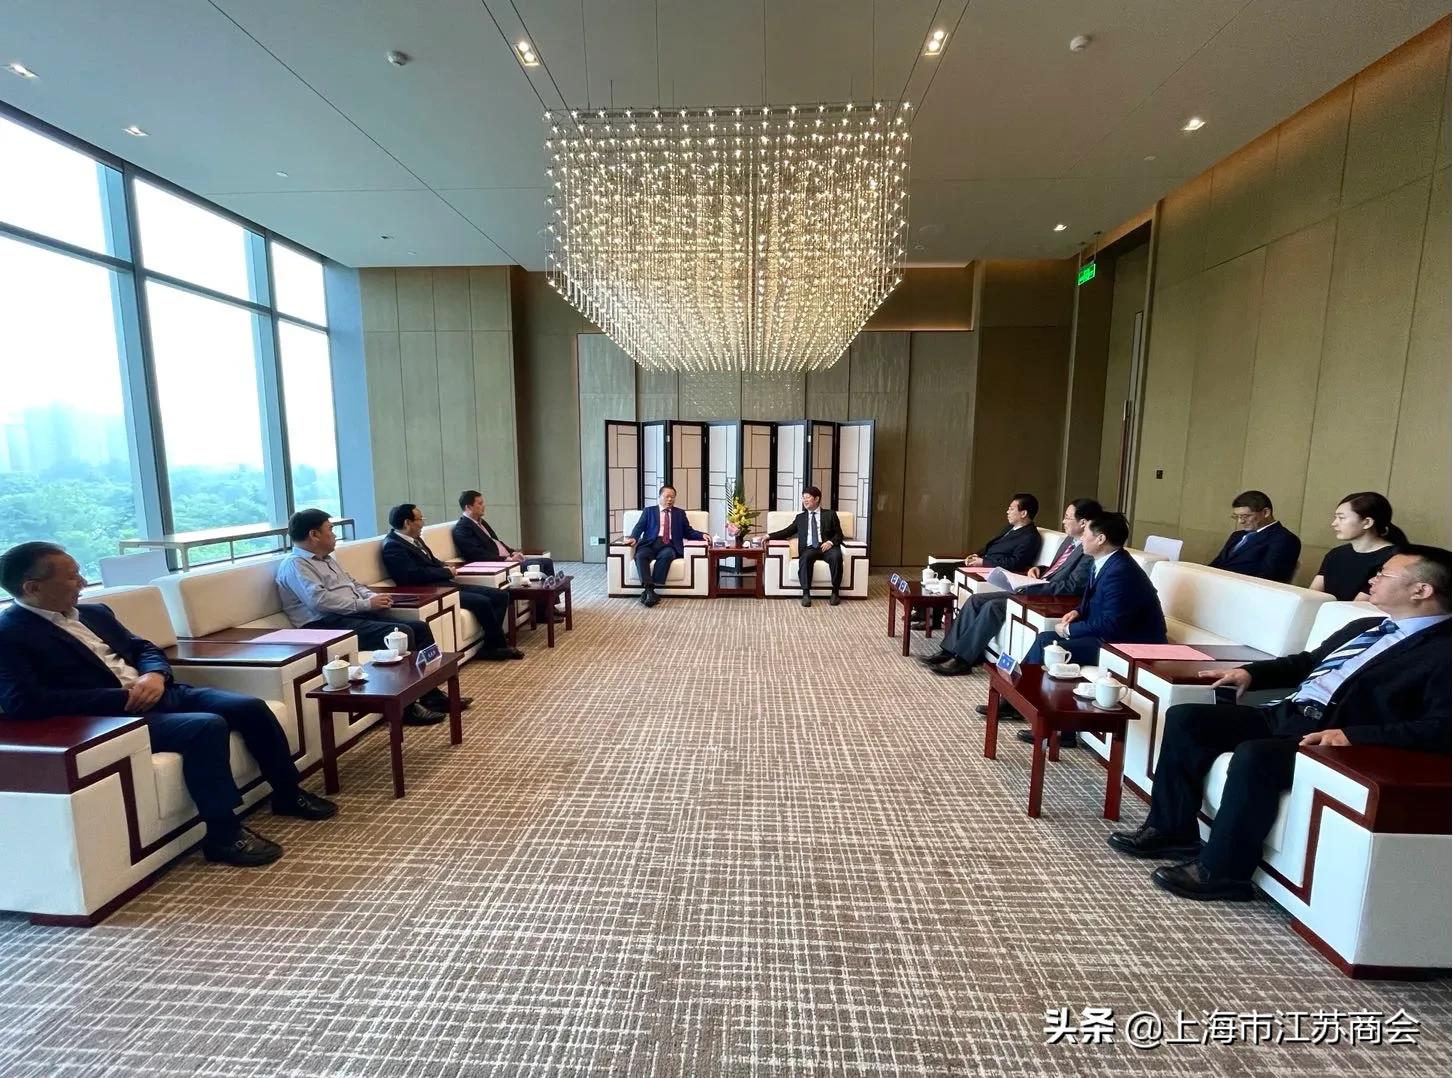 丁佐宏受邀参加2021年西安市产业投资合作年会